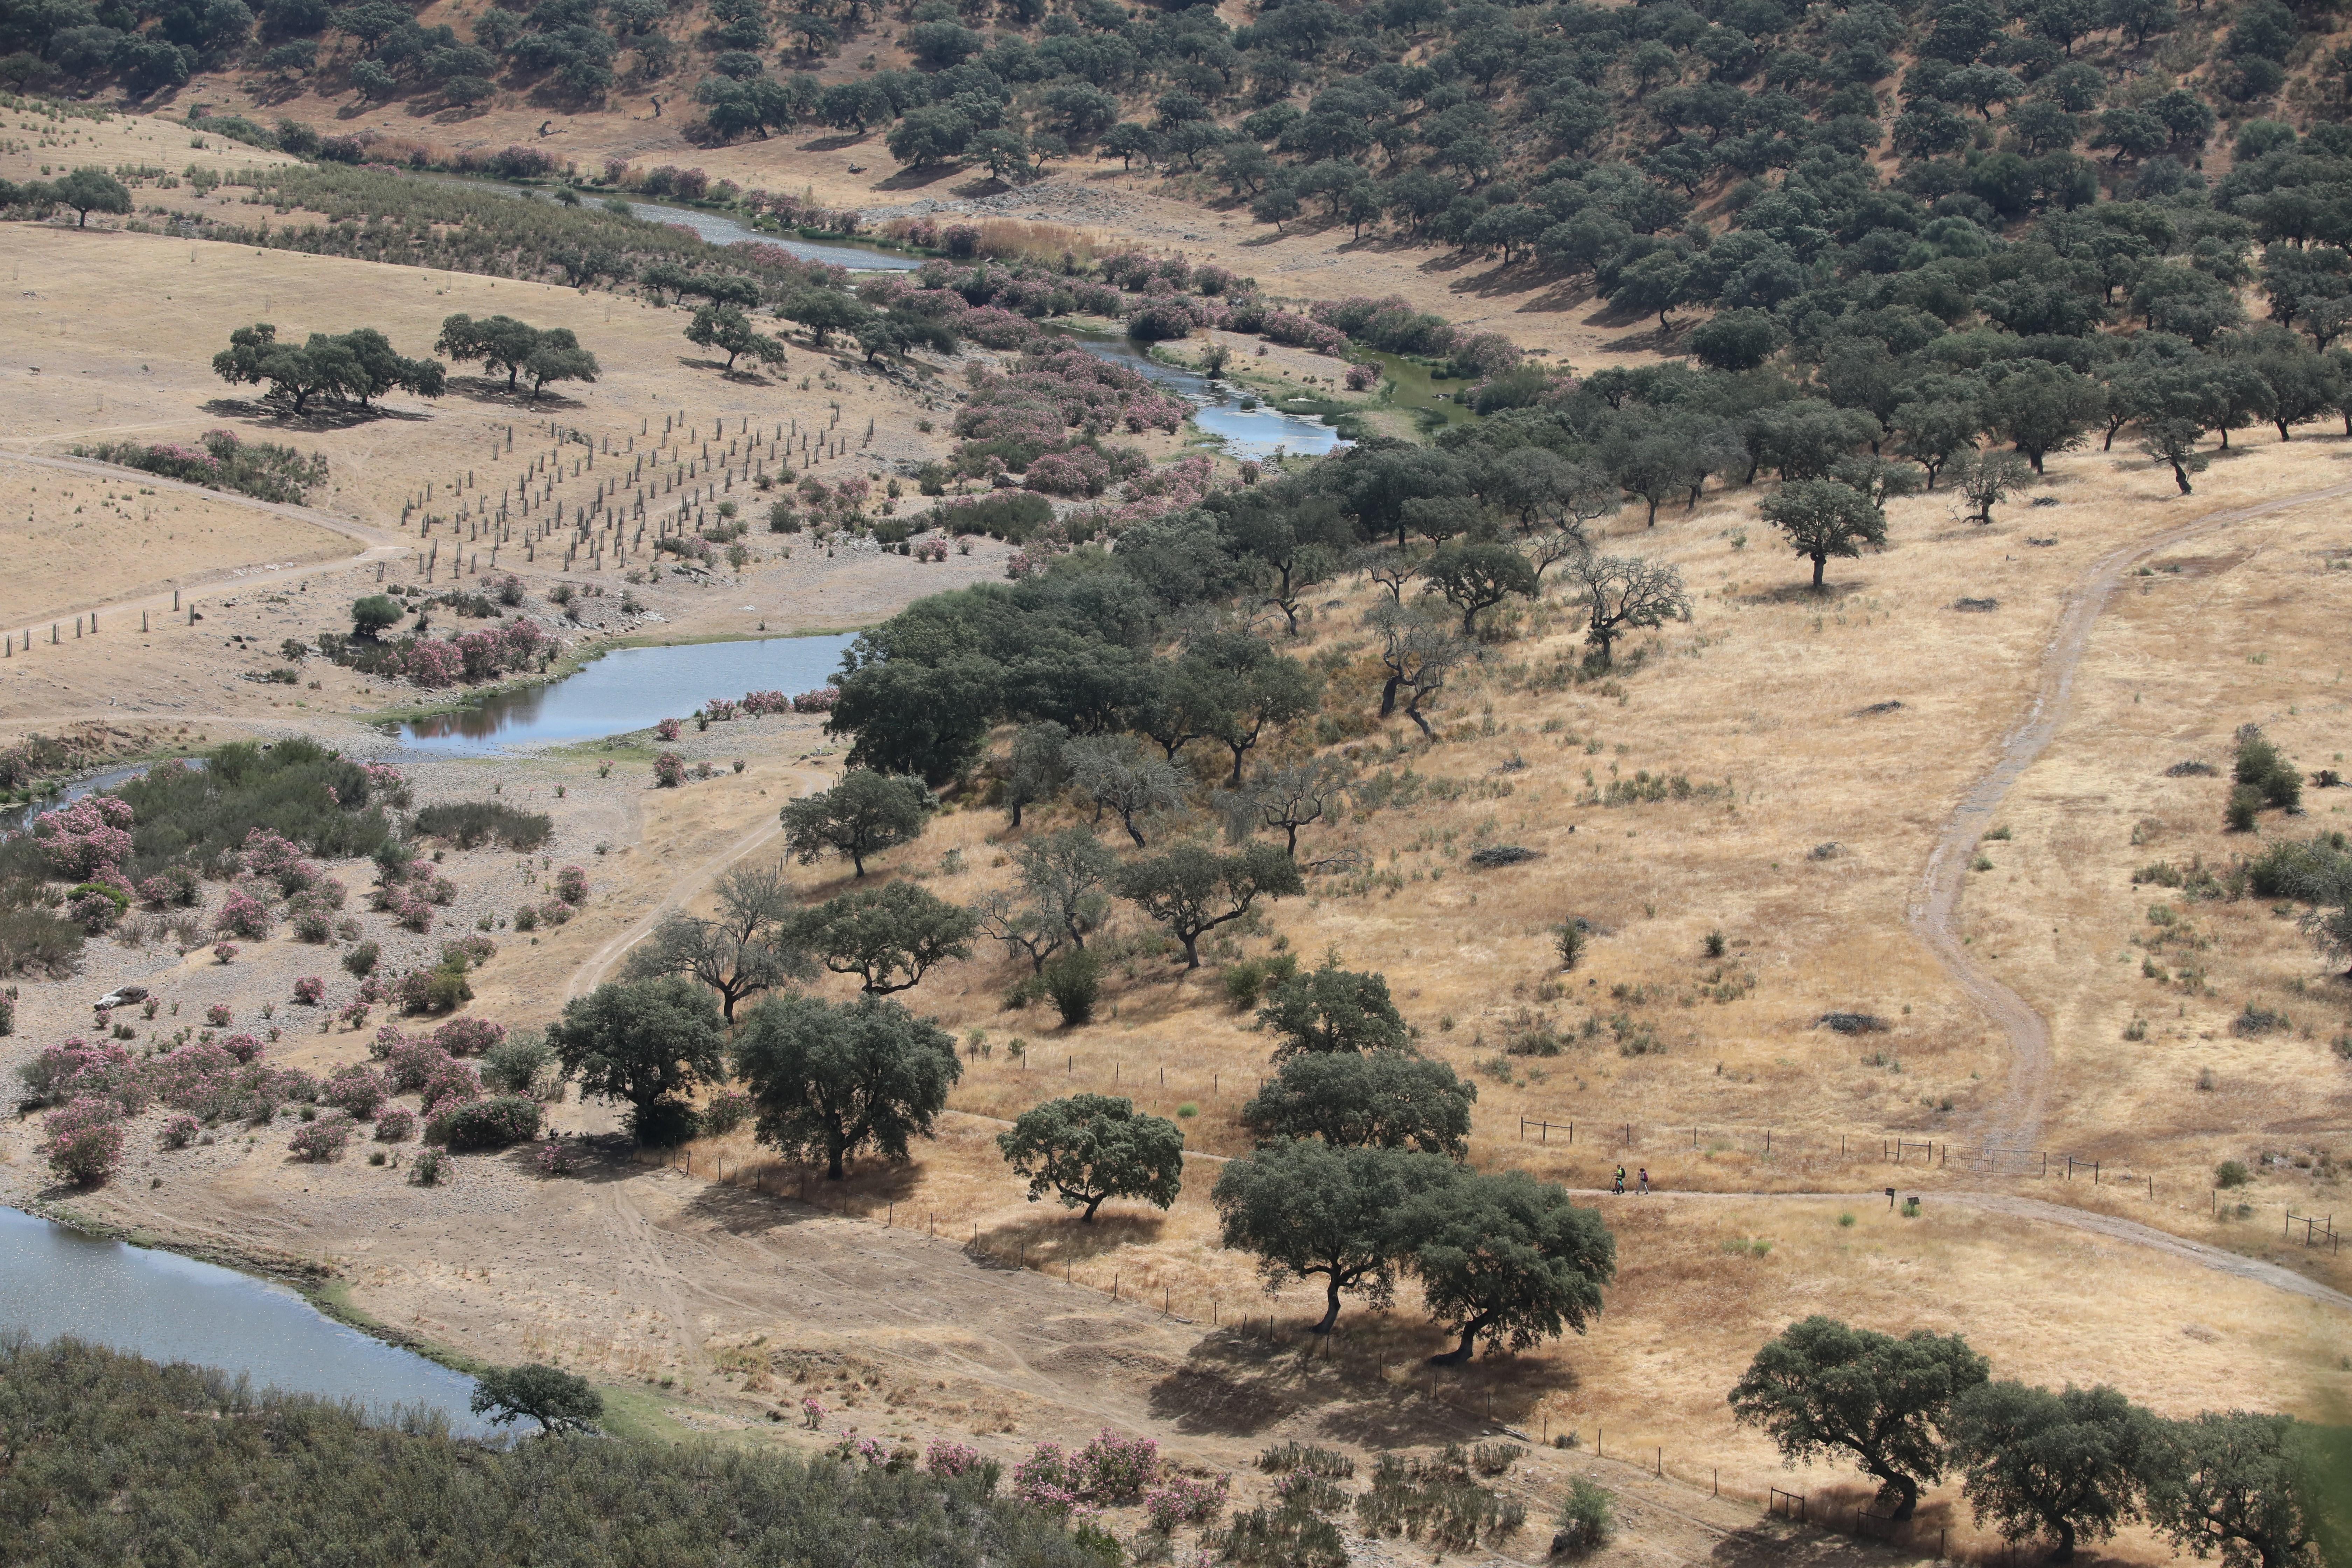  La sequía y tala de árboles es evidente en varias regiones del mundo. (Prensa Libre: EFE)